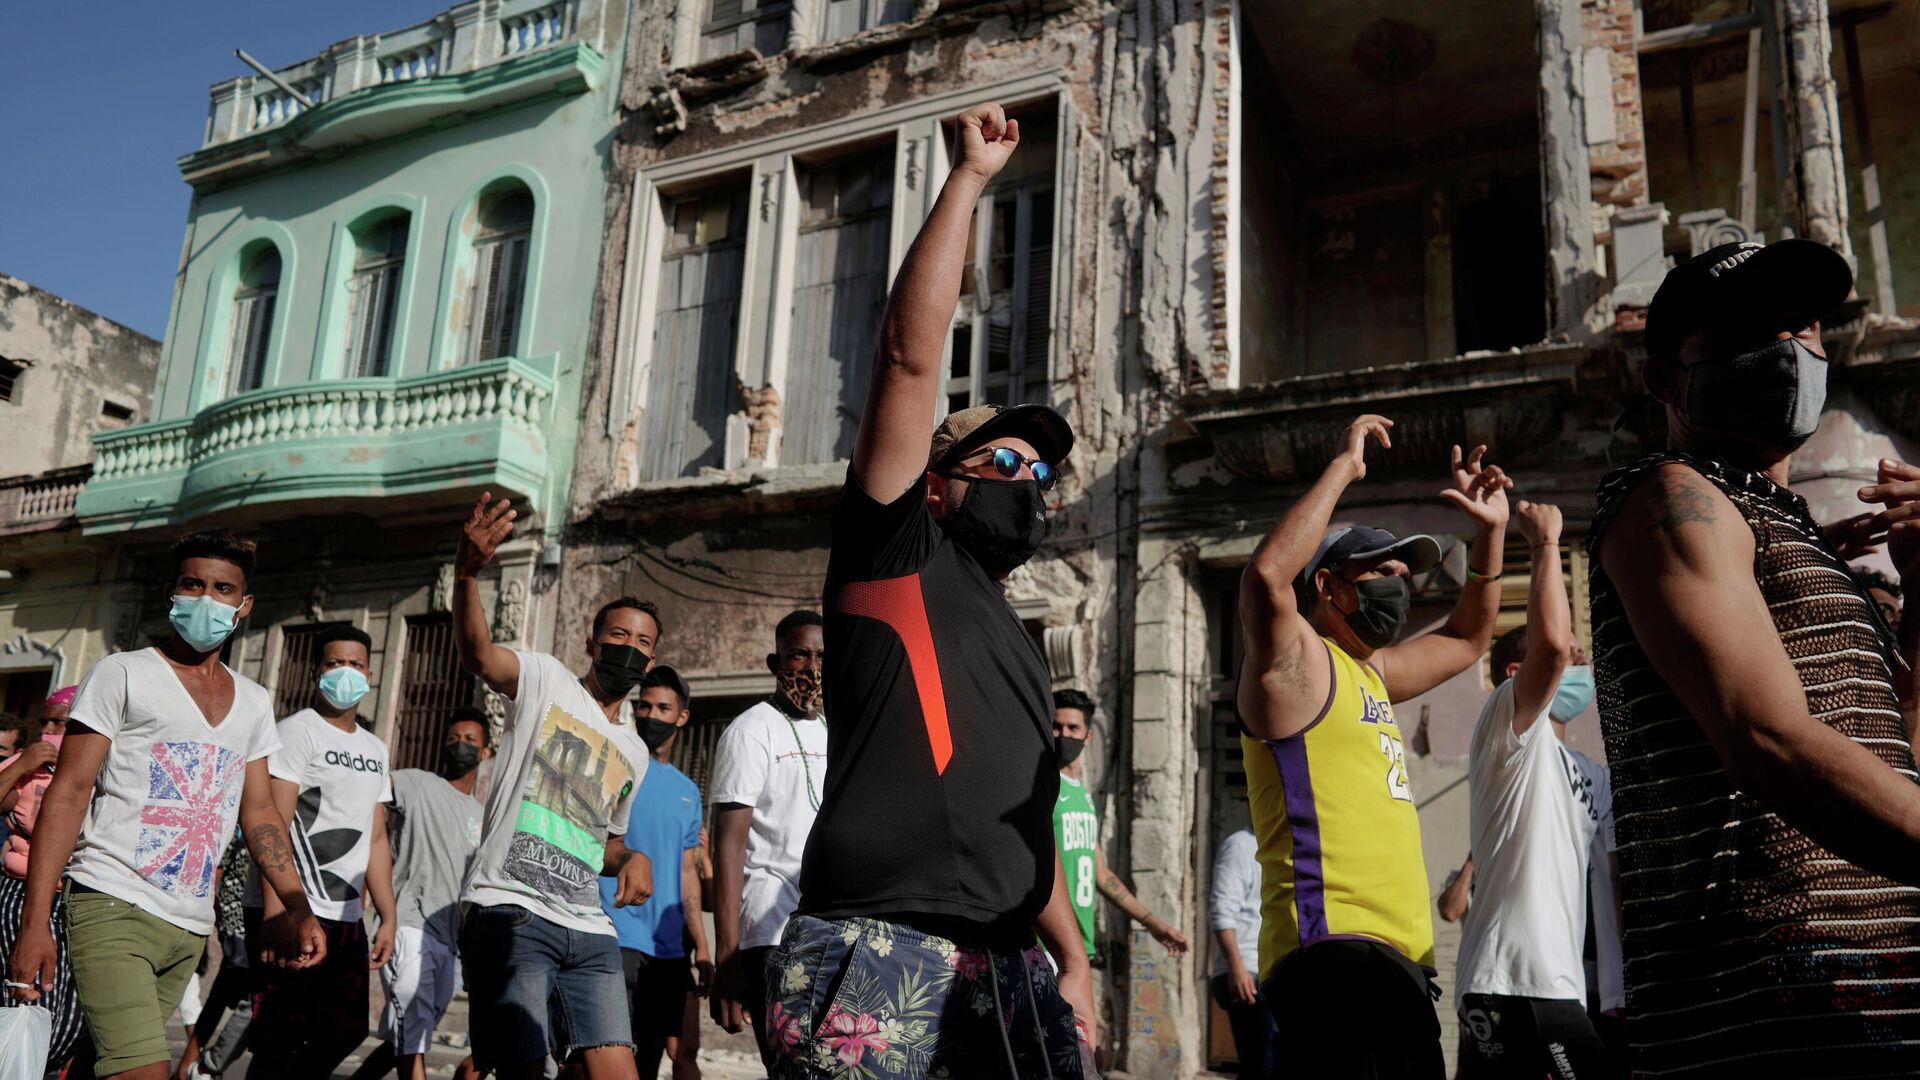 La gente durante una protesta contra y en apoyo al Gobierno, en medio del brote del coronavirus, en La Habana, Cuba, el 11 de julio de 2021 - Sputnik Mundo, 1920, 10.08.2021